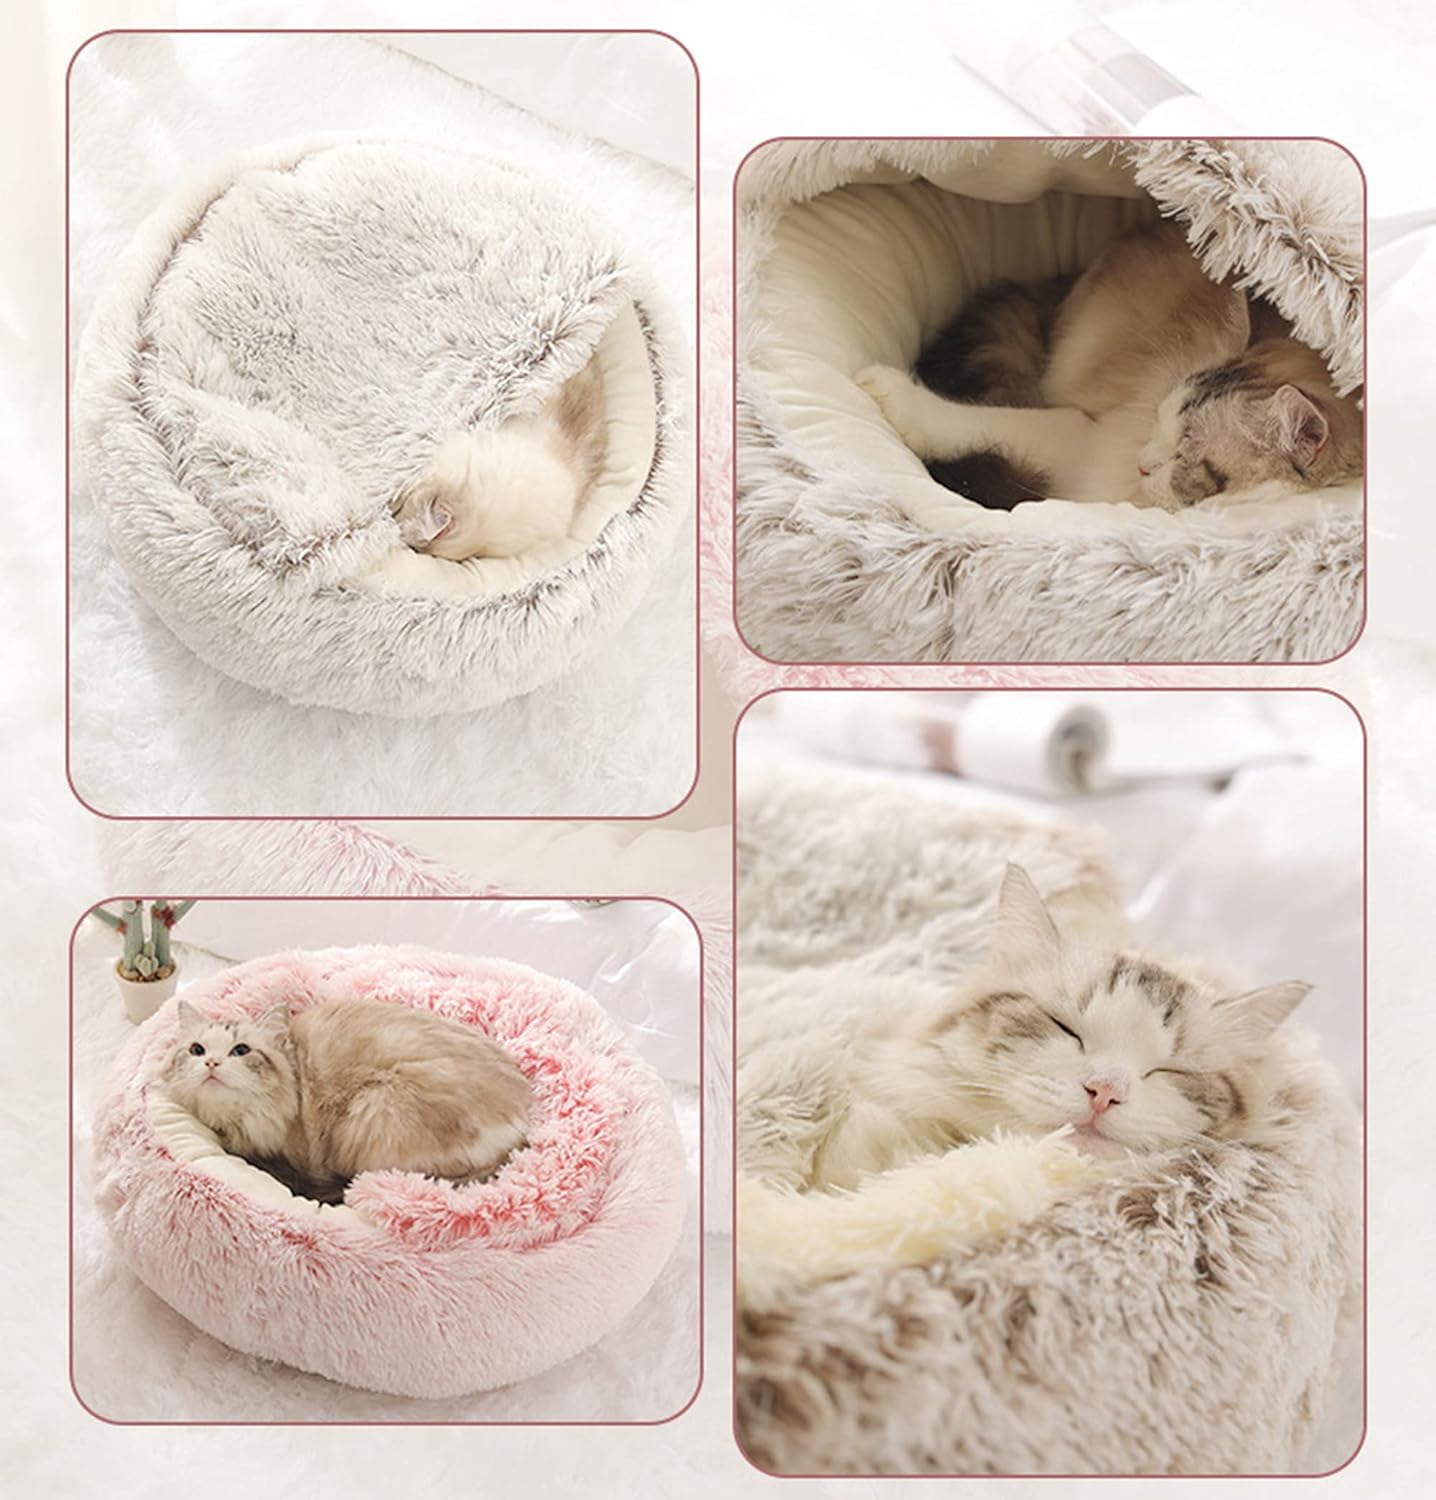 TraumKatzen™ - Gib deiner Katze den erholsamen Schlaf, den sie verdient | 50% RABATT